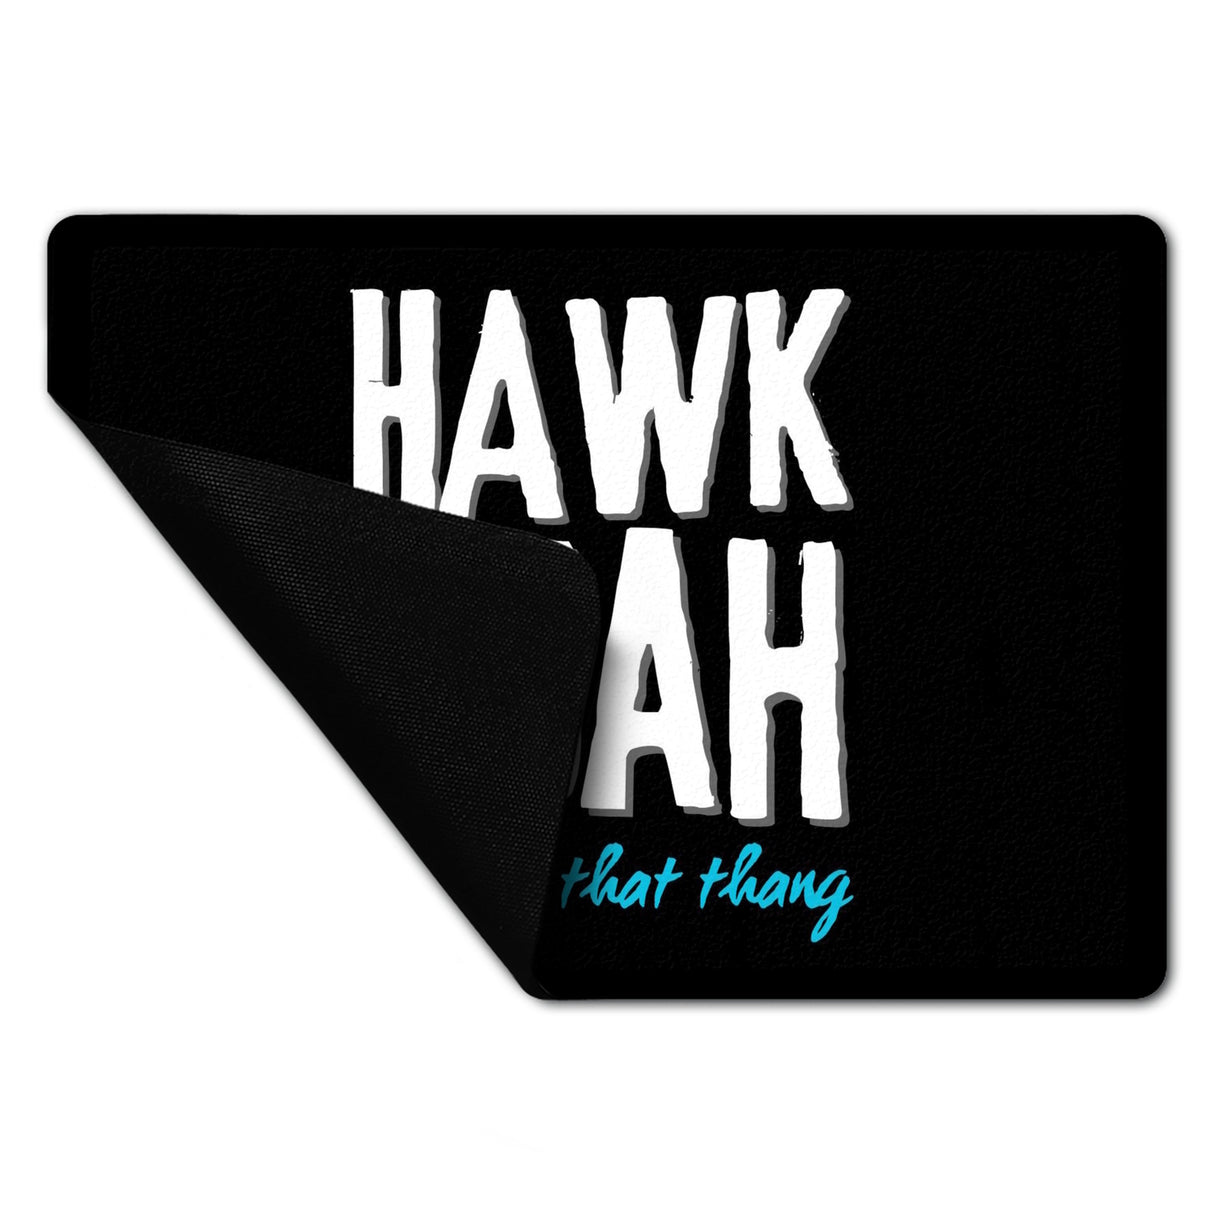 Hawk Tuah Fußmatte in 35x50 cm ohne Rand mit Spruch Spit on that thang